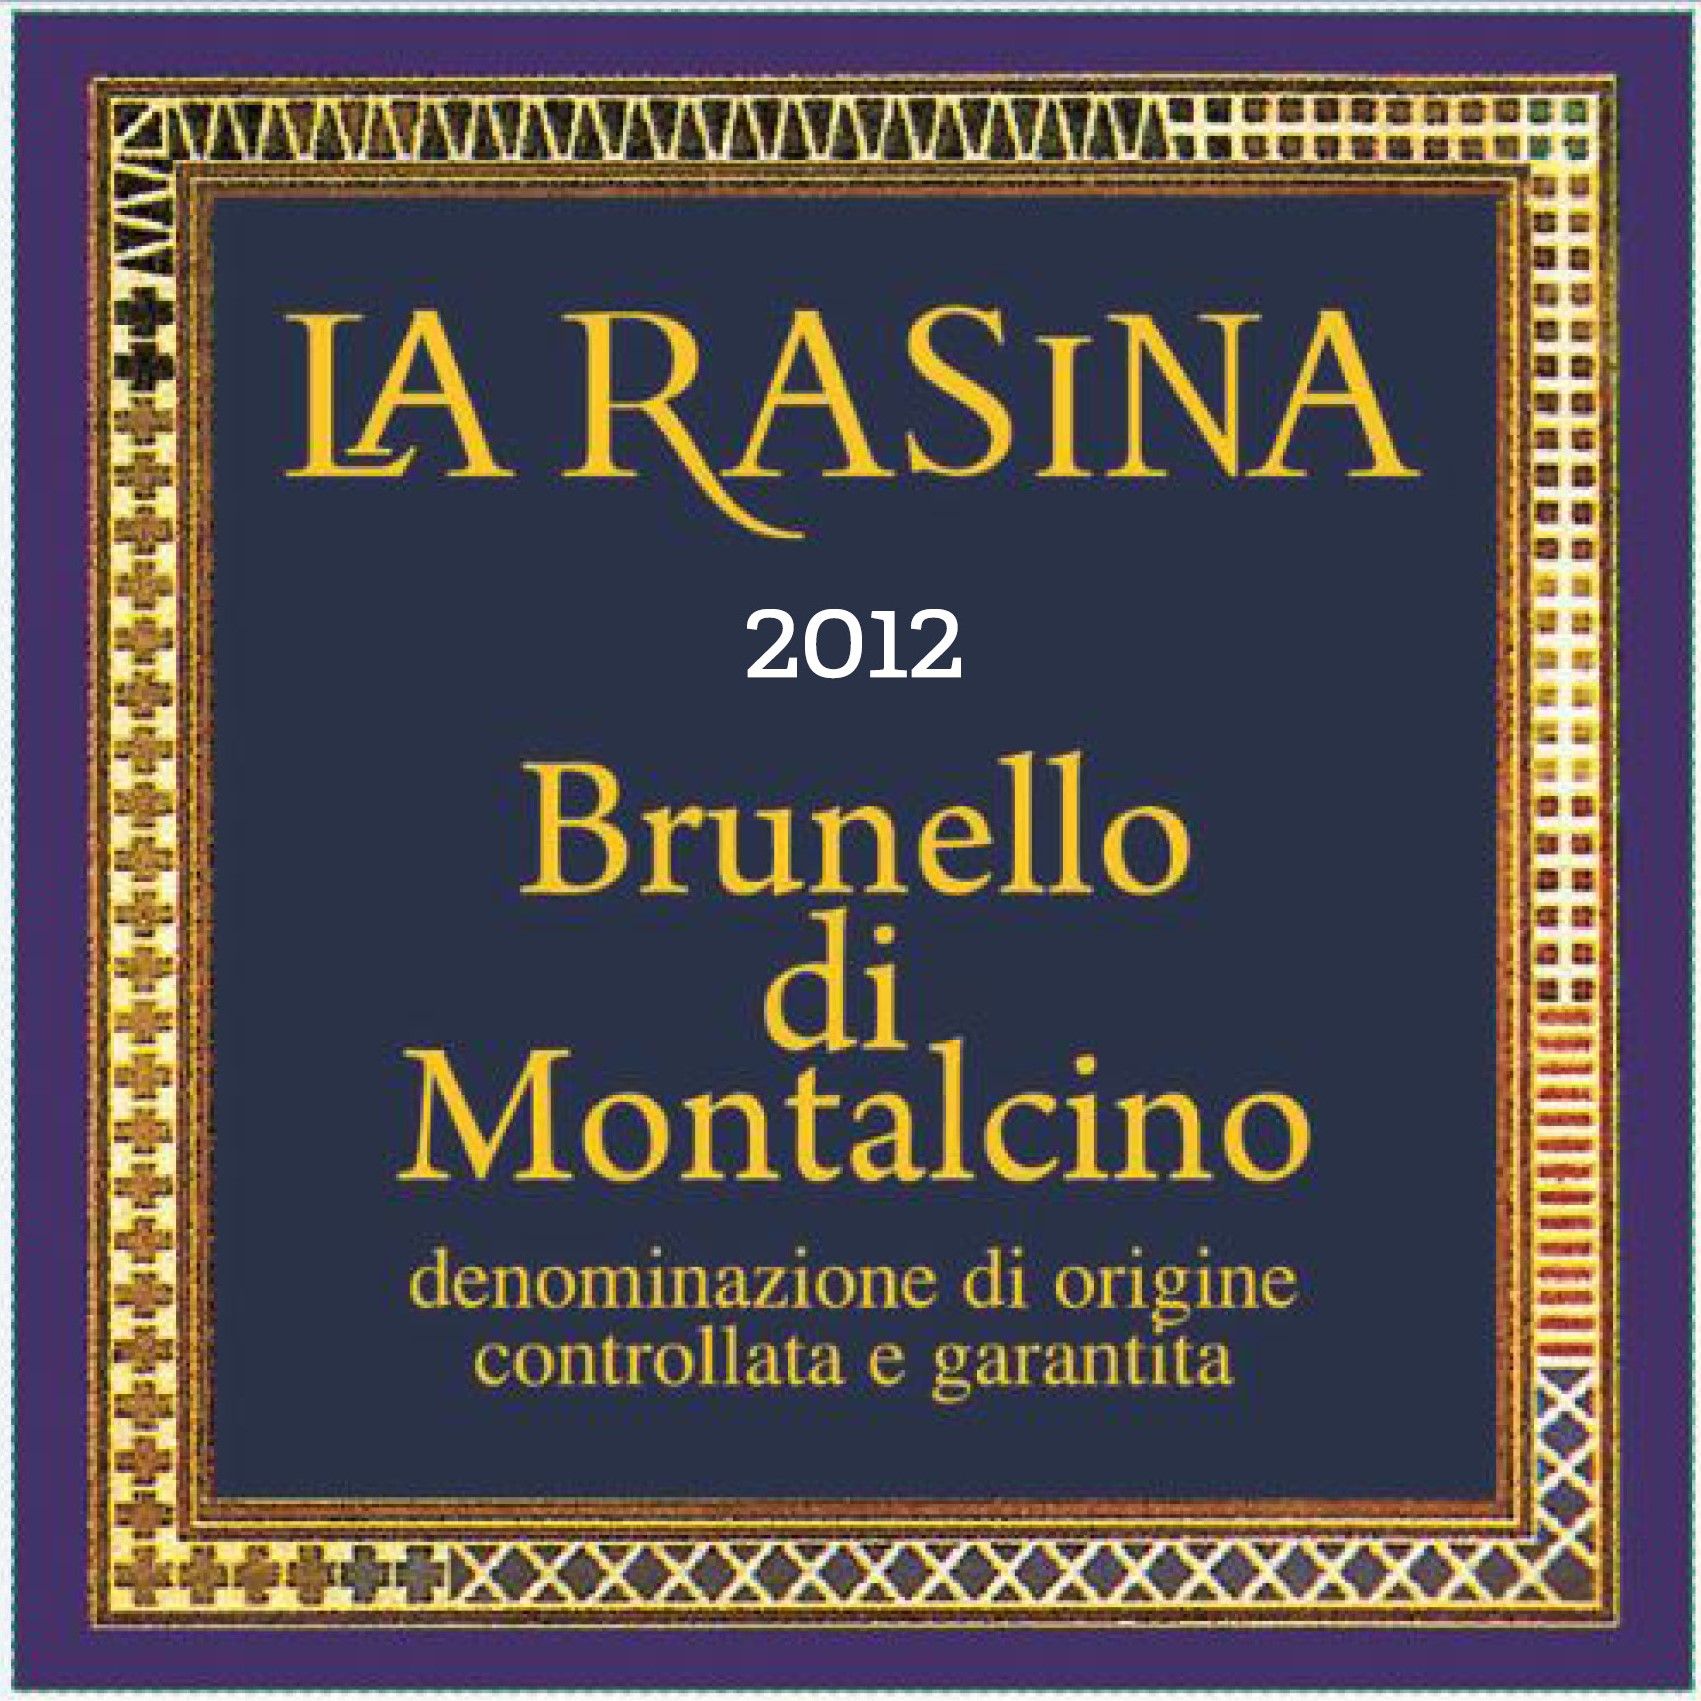 2012 La Rasina Brunello di Montalcino image